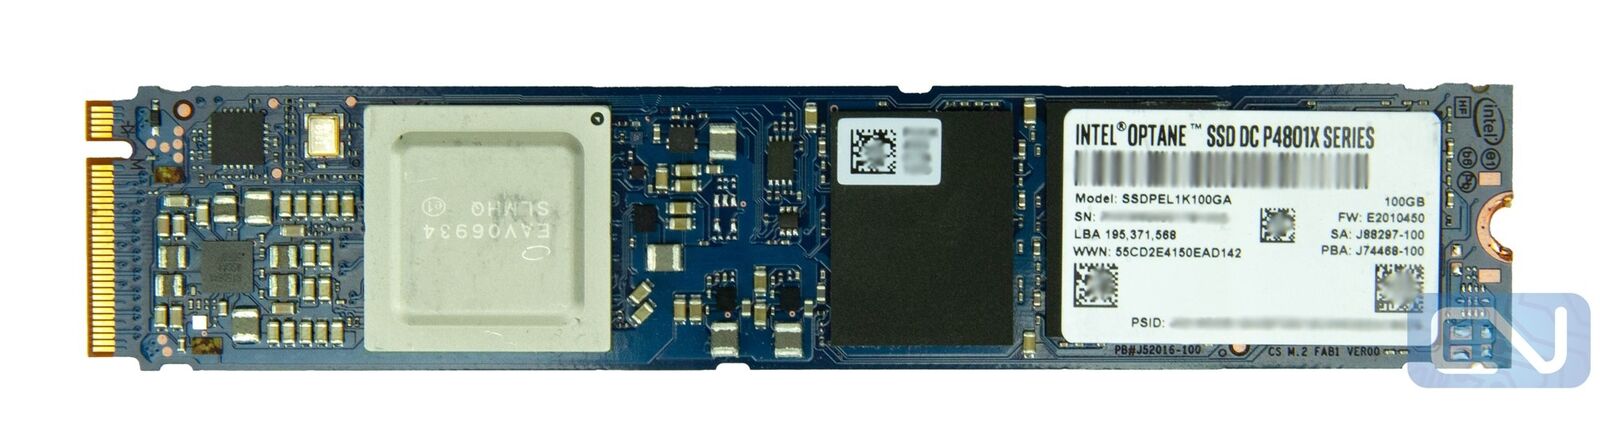 Intel Optane SSD DC P4801X Series SSDPEL1K100GA 100GB M.2 NVMe 60 DWPD